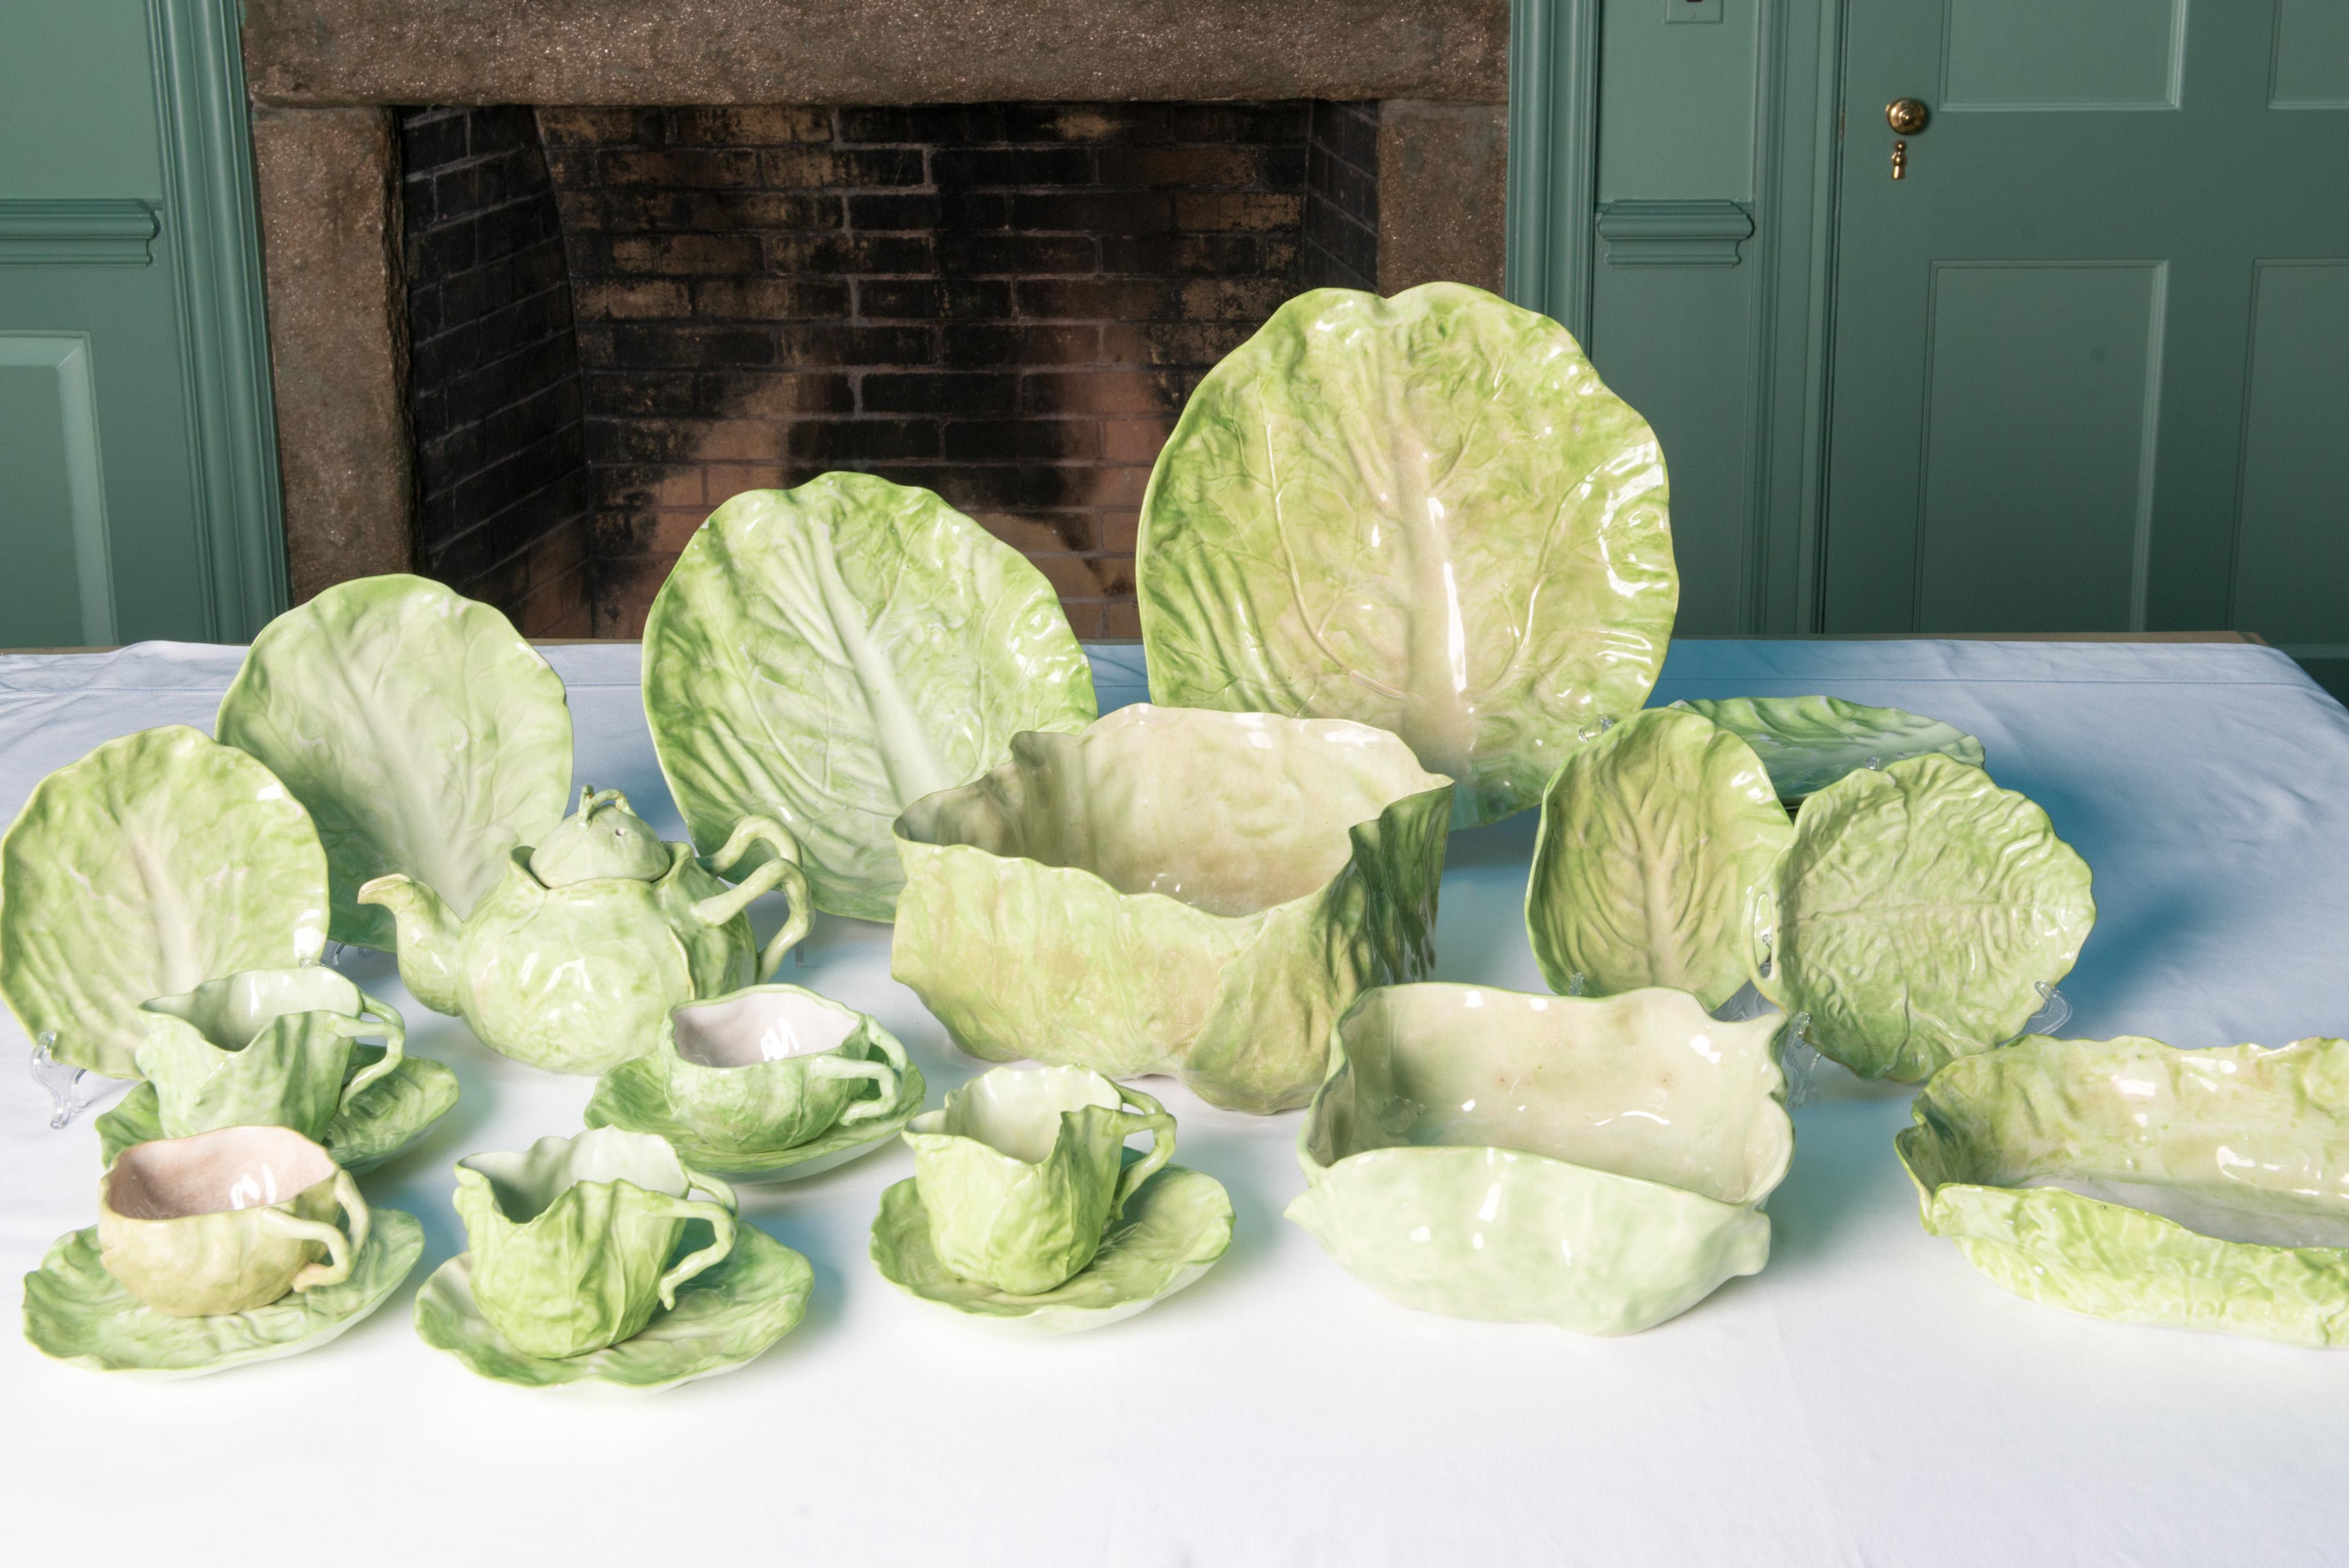 Dies ist eine große Sammlung New Milford Wannopee grün Lettuce Leaf Keramik. Dies sind seltene und schwer zu findende Stücke. Sie werden zur Familie der Majolika gezählt. Aufgrund des Alters und der Natur der Töpferware ist die grüne Oberfläche oft